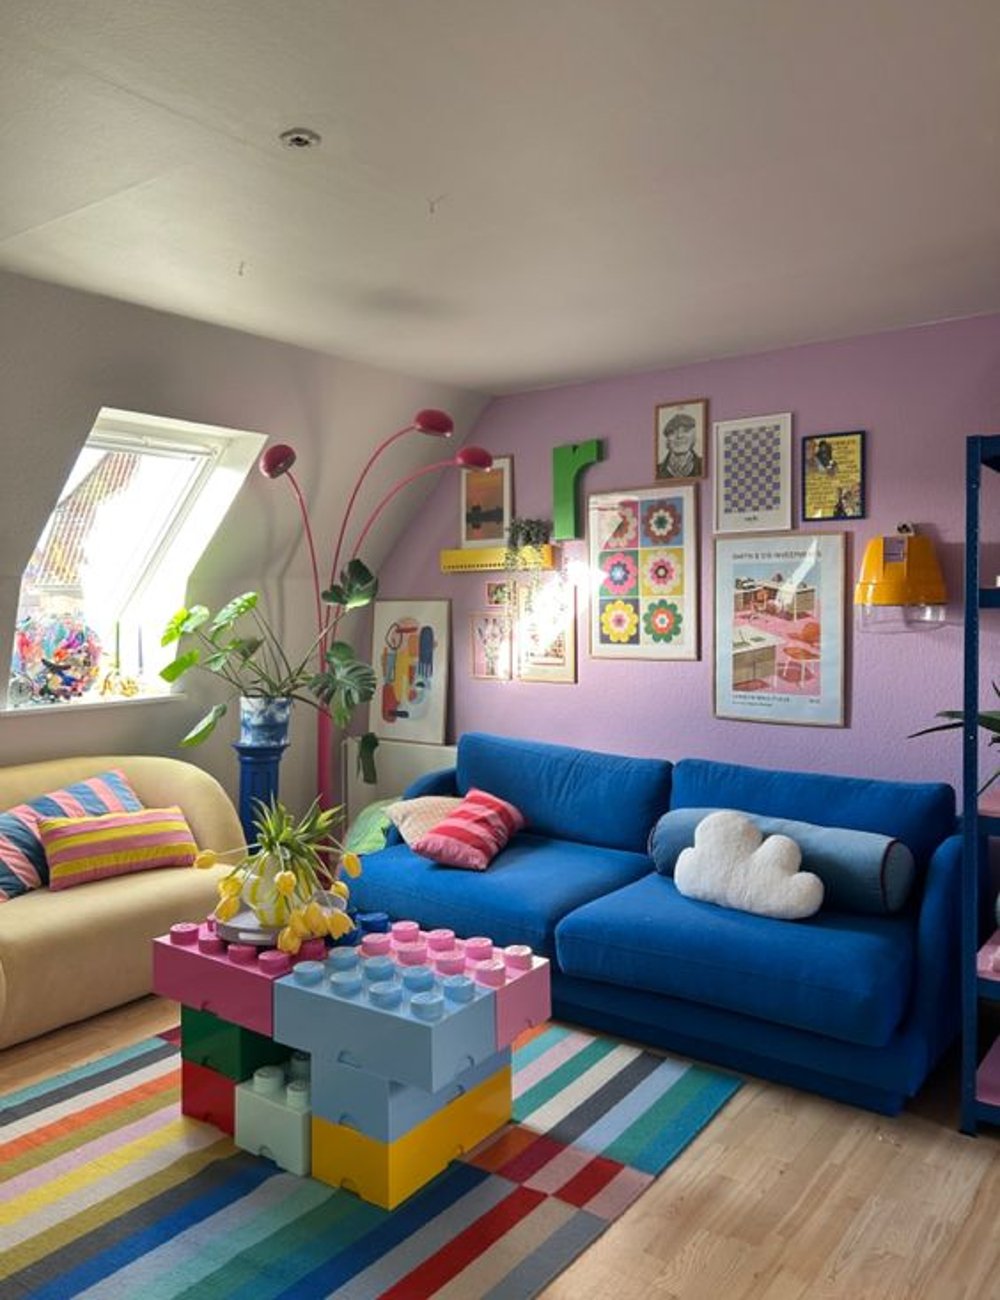 Funky decor - decor - tendências de decoração - casa - dicas - https://stealthelook.com.br